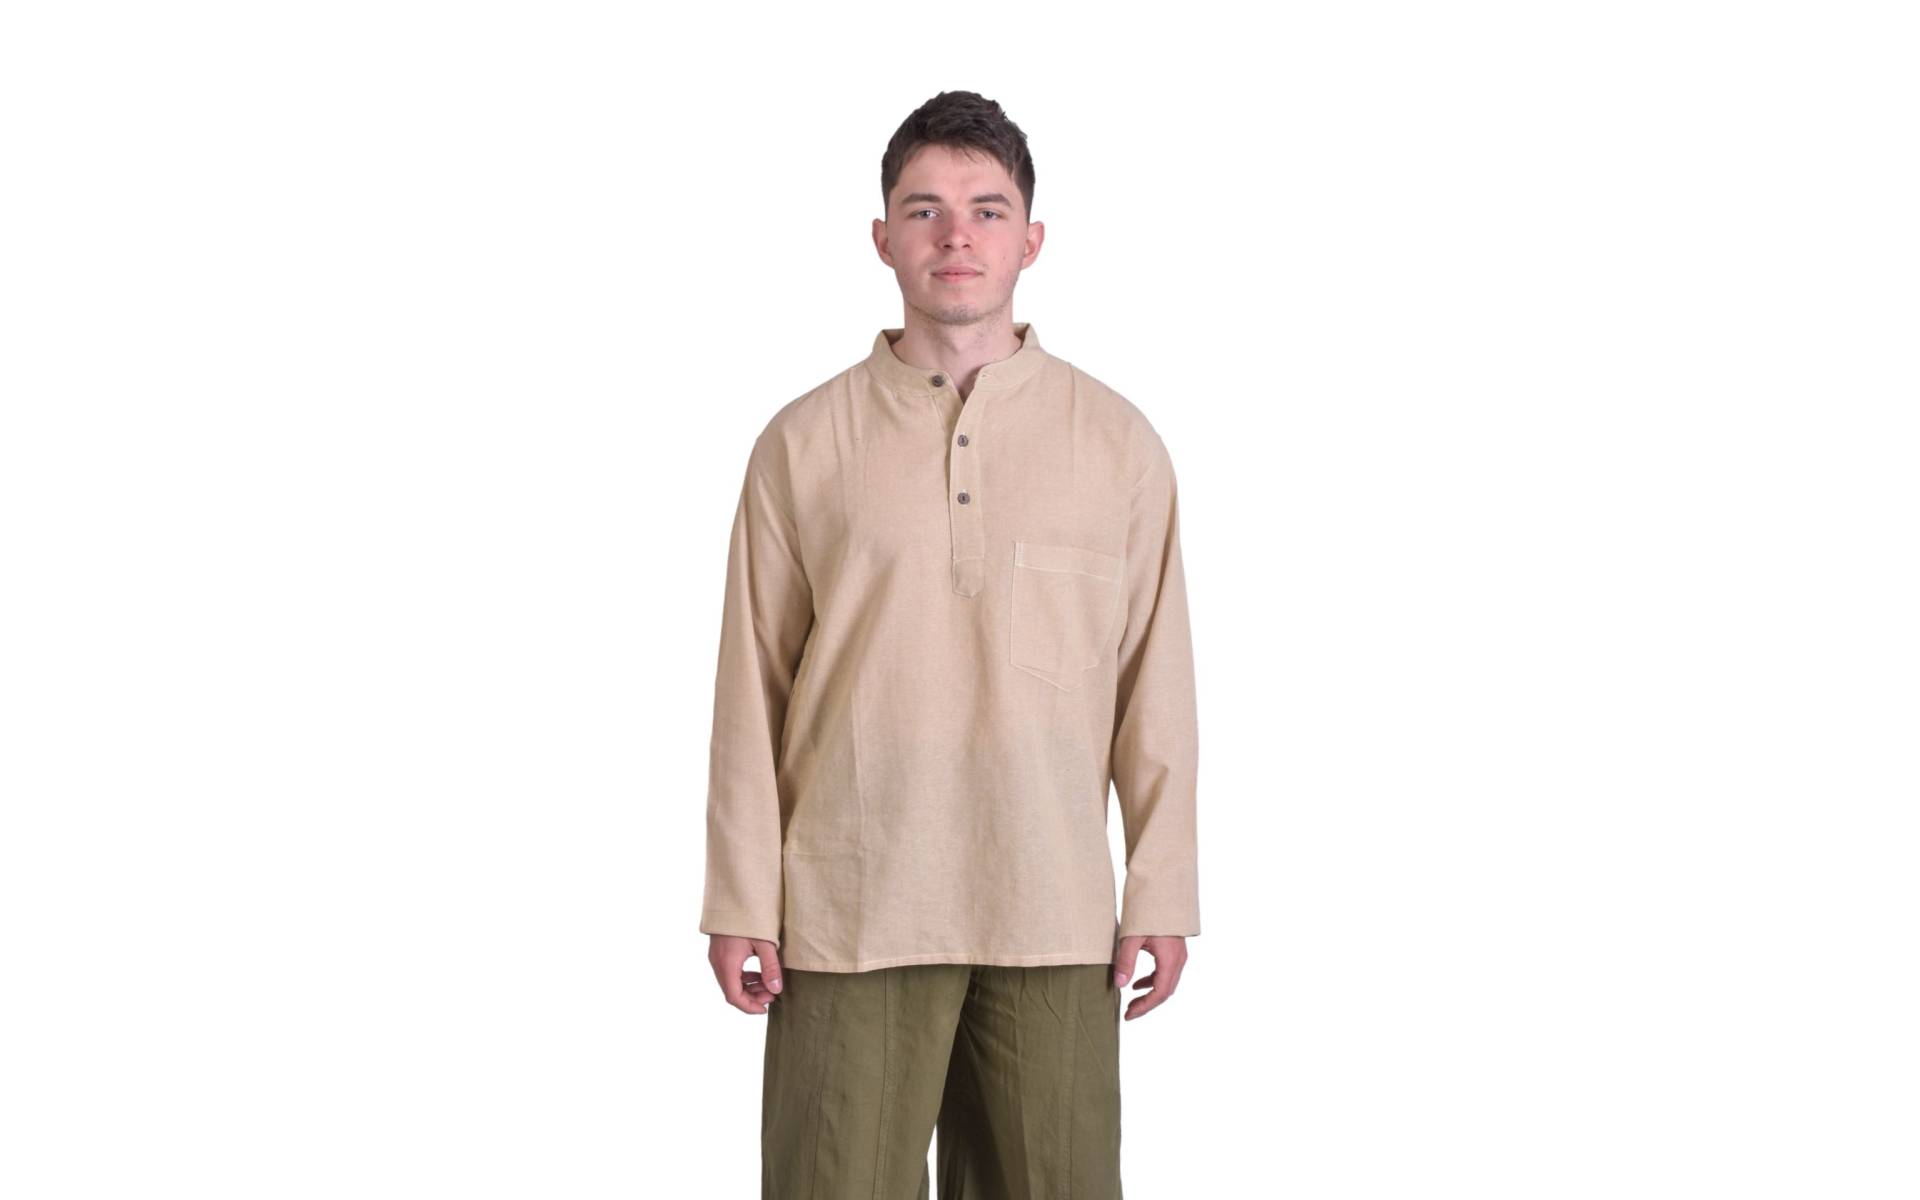 Béžová pánska košeľa-kurta s dlhým rukávom a vreckom